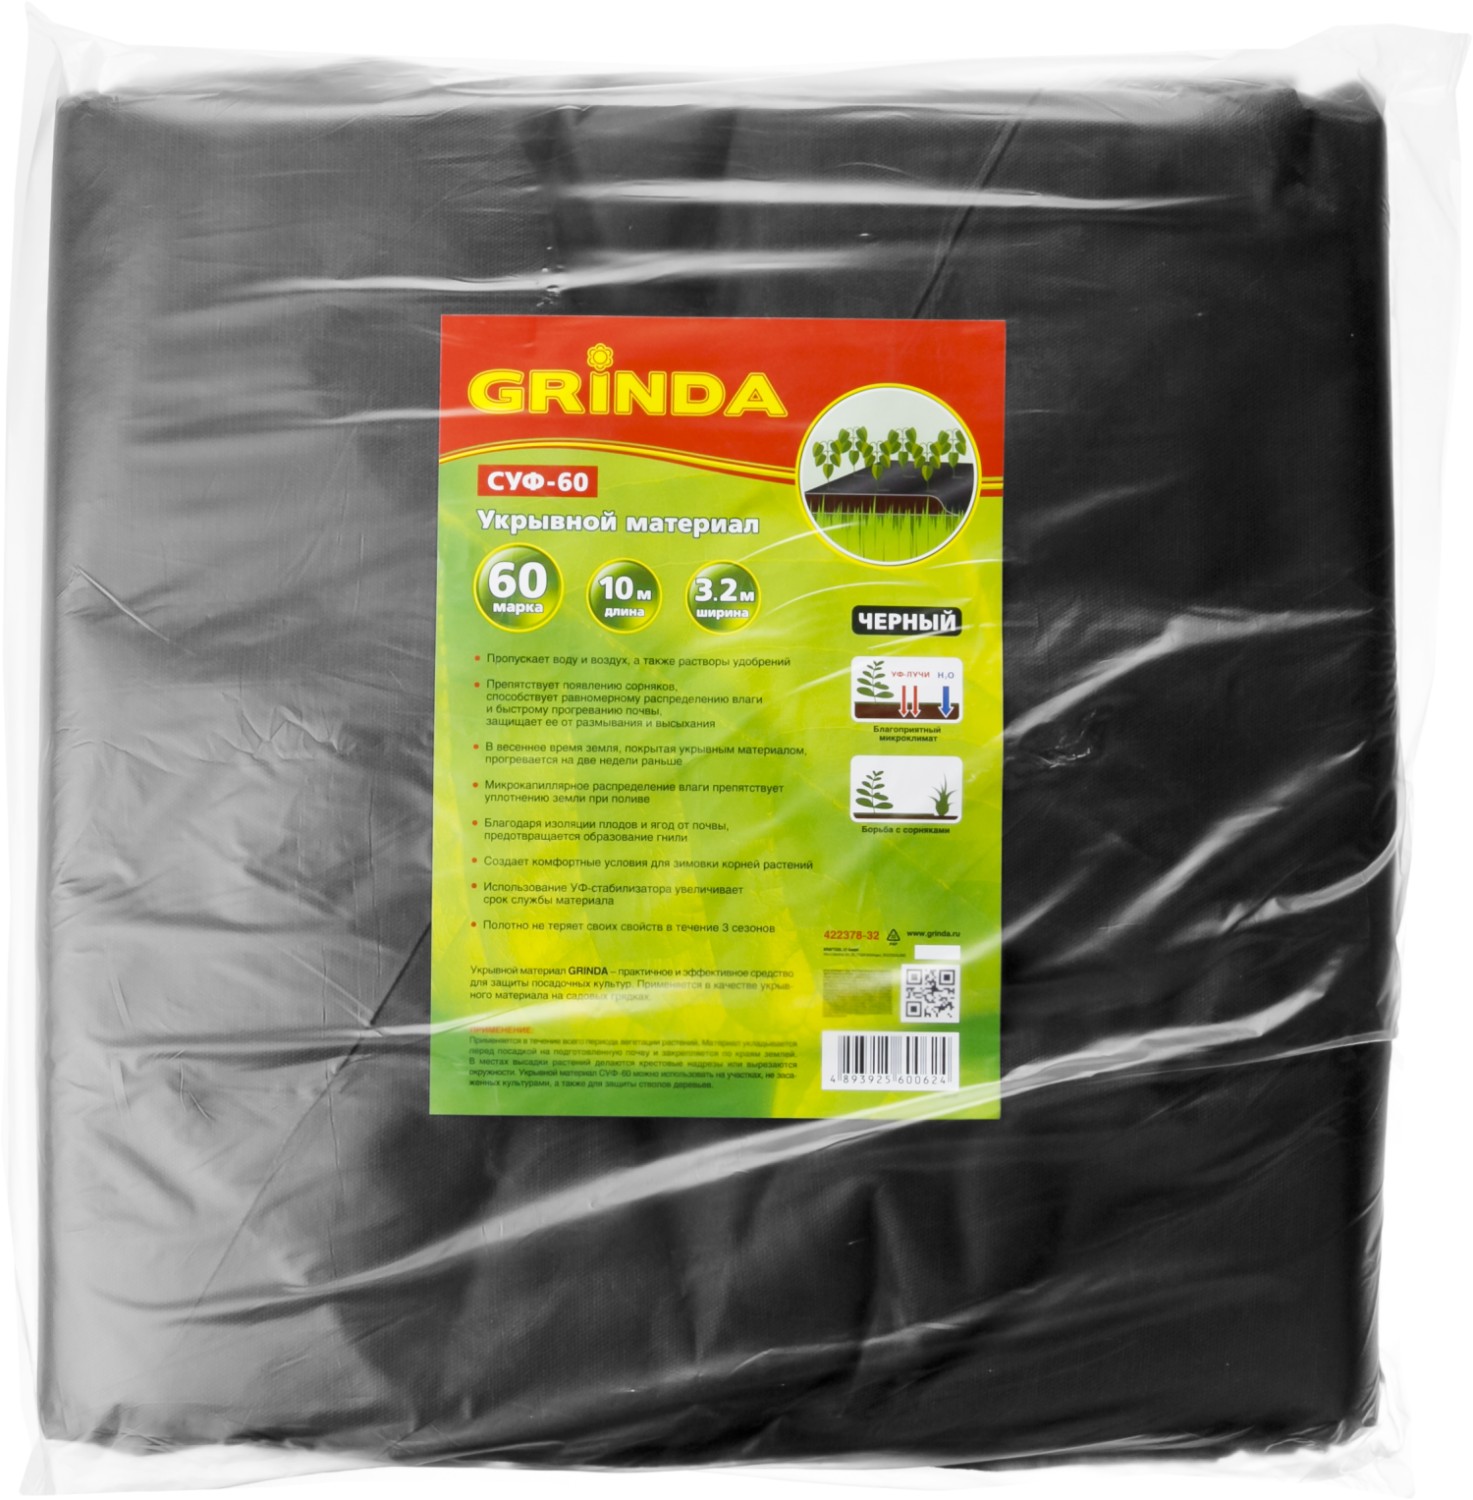 GRINDA СУФ-60, 3.2 x 10 м, черны, укрывной материал (422378-32)